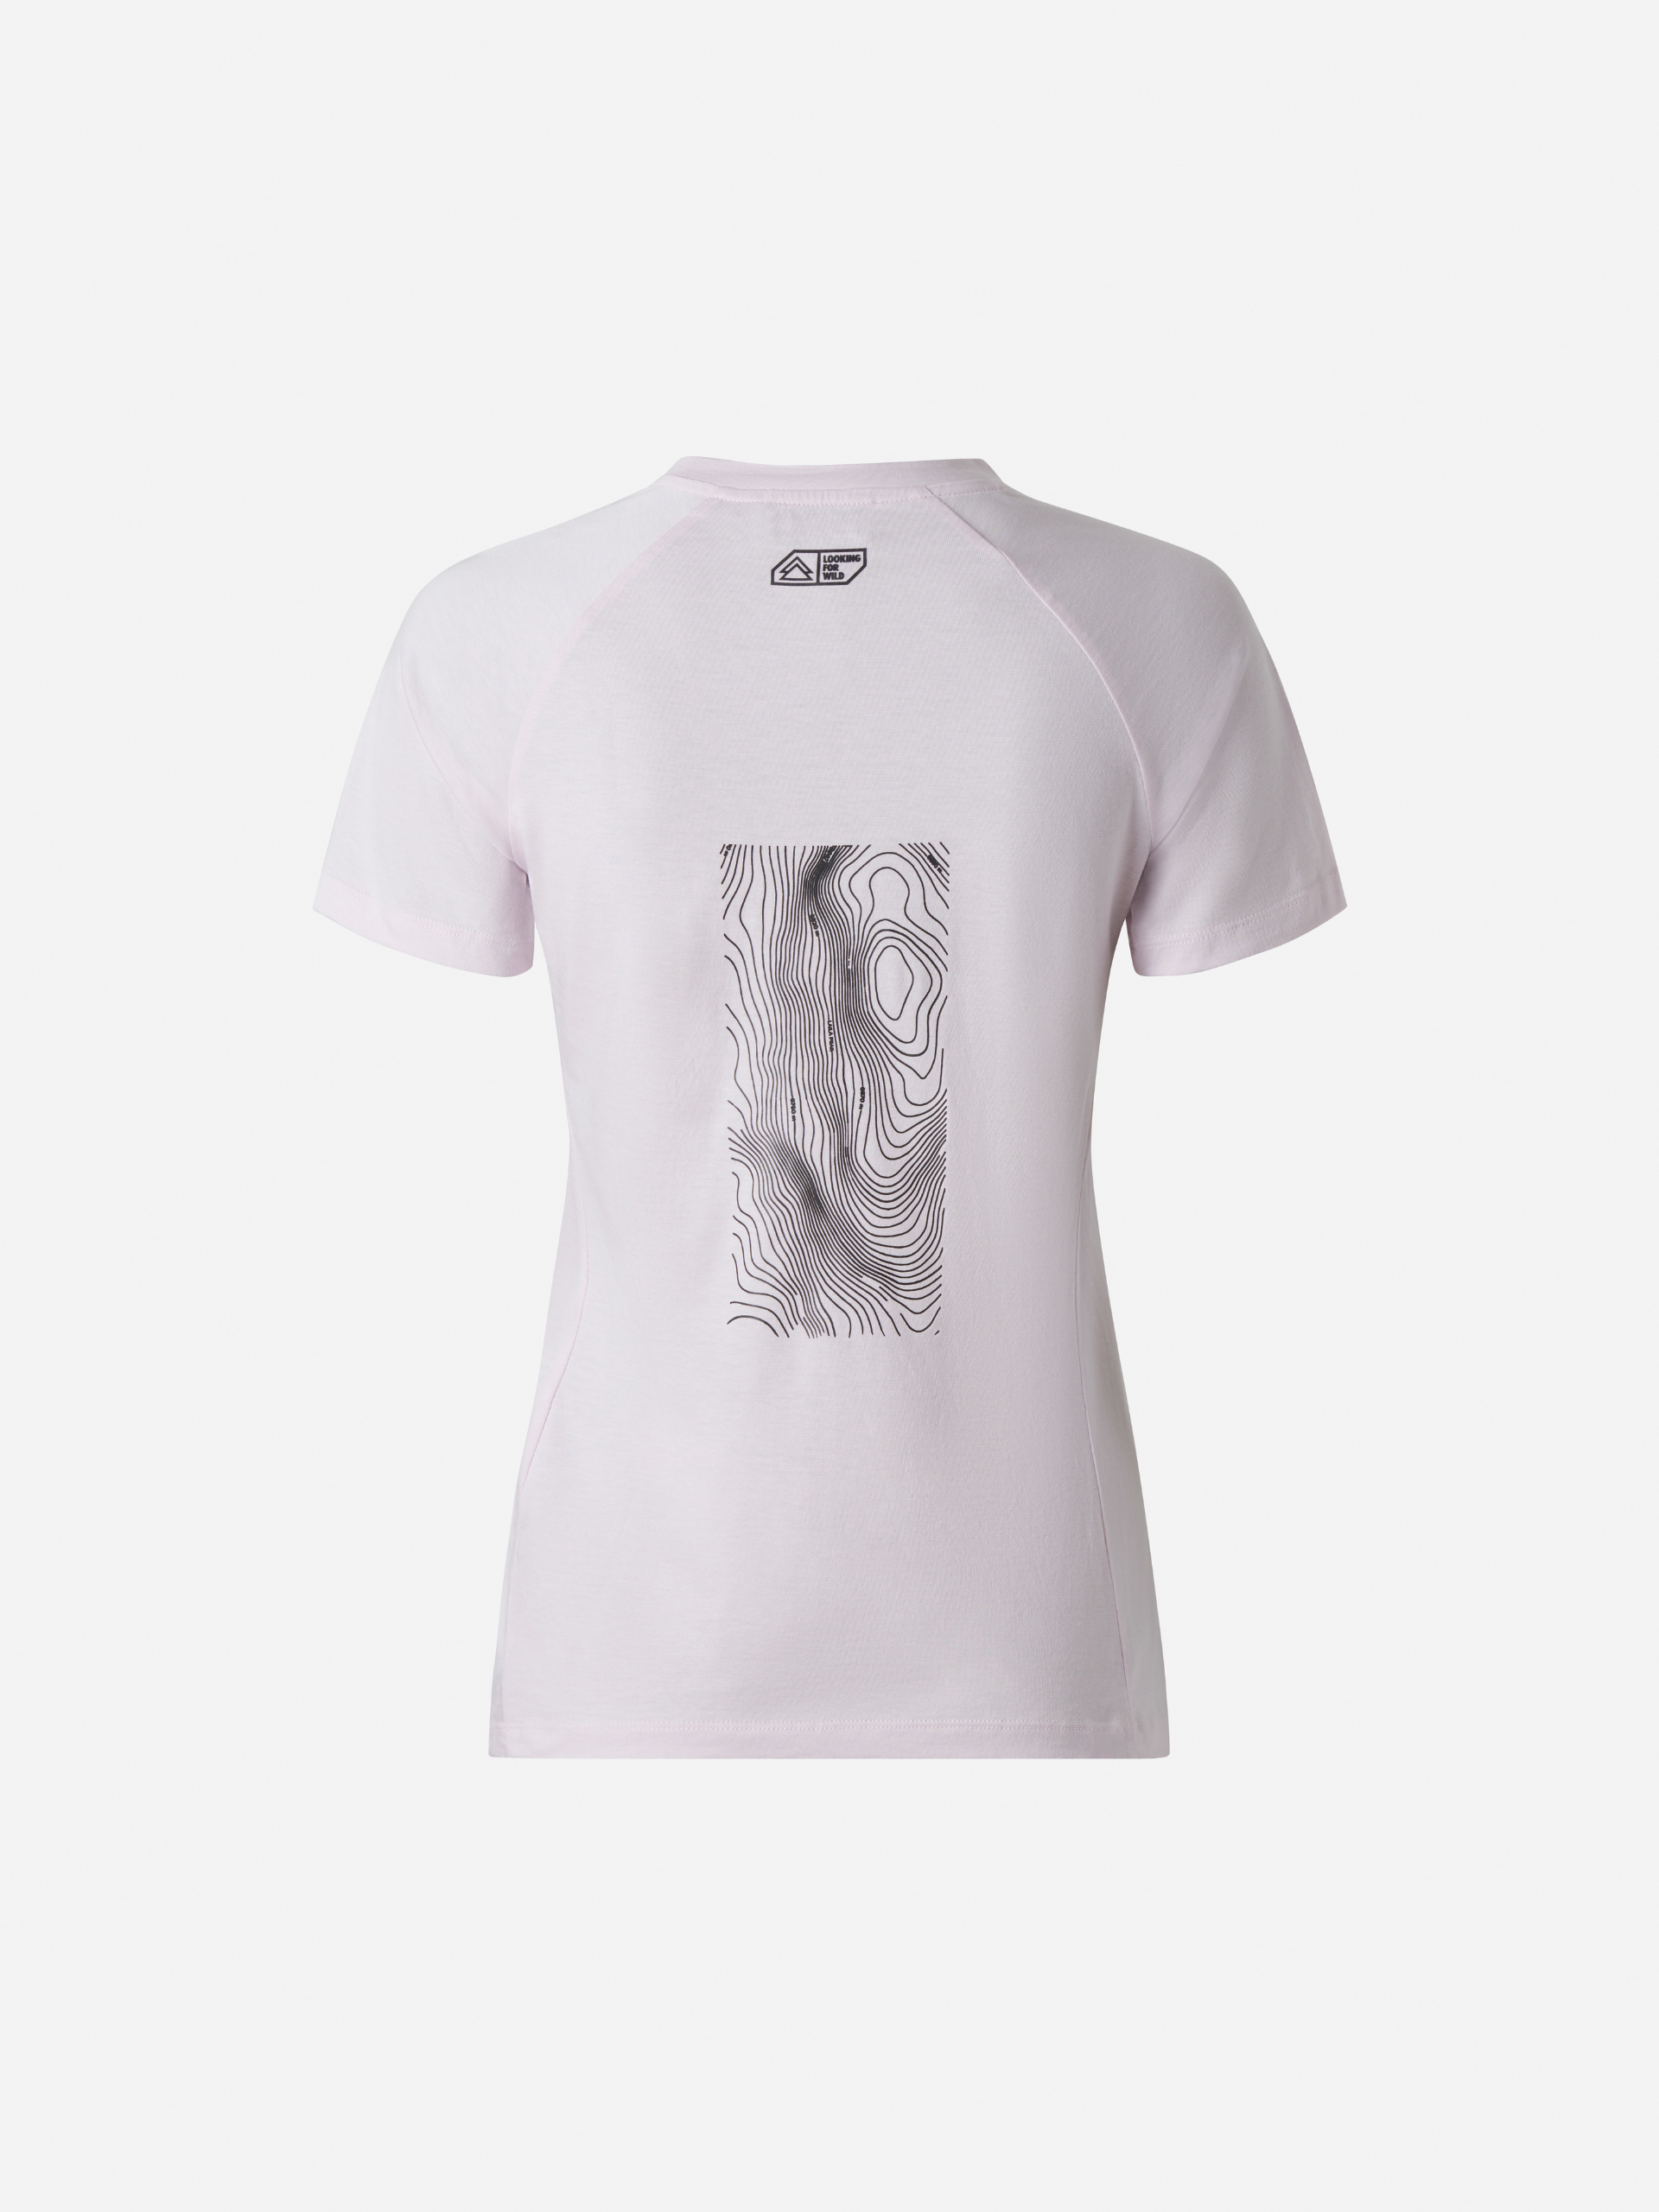 *New* Women's T-Shirt Tana Lavender Fog